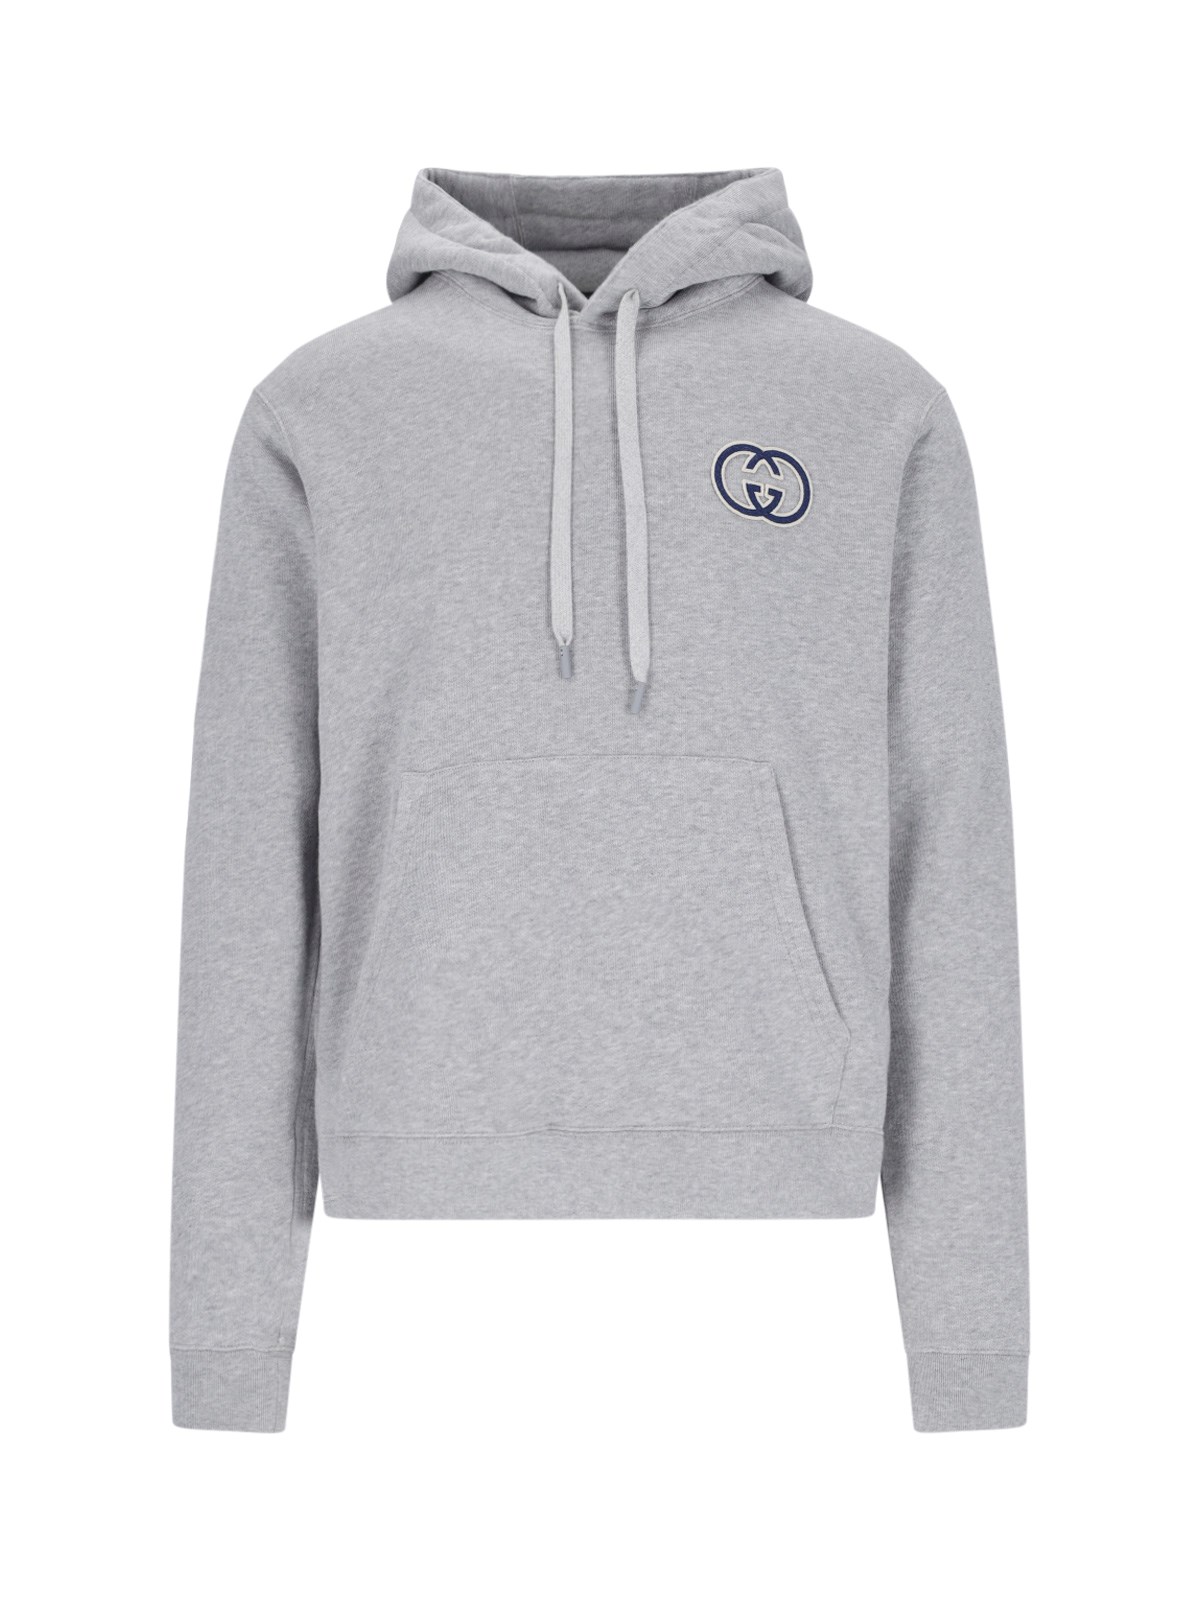 Gucci 'incrocio Gg' Sweatshirt In Grey